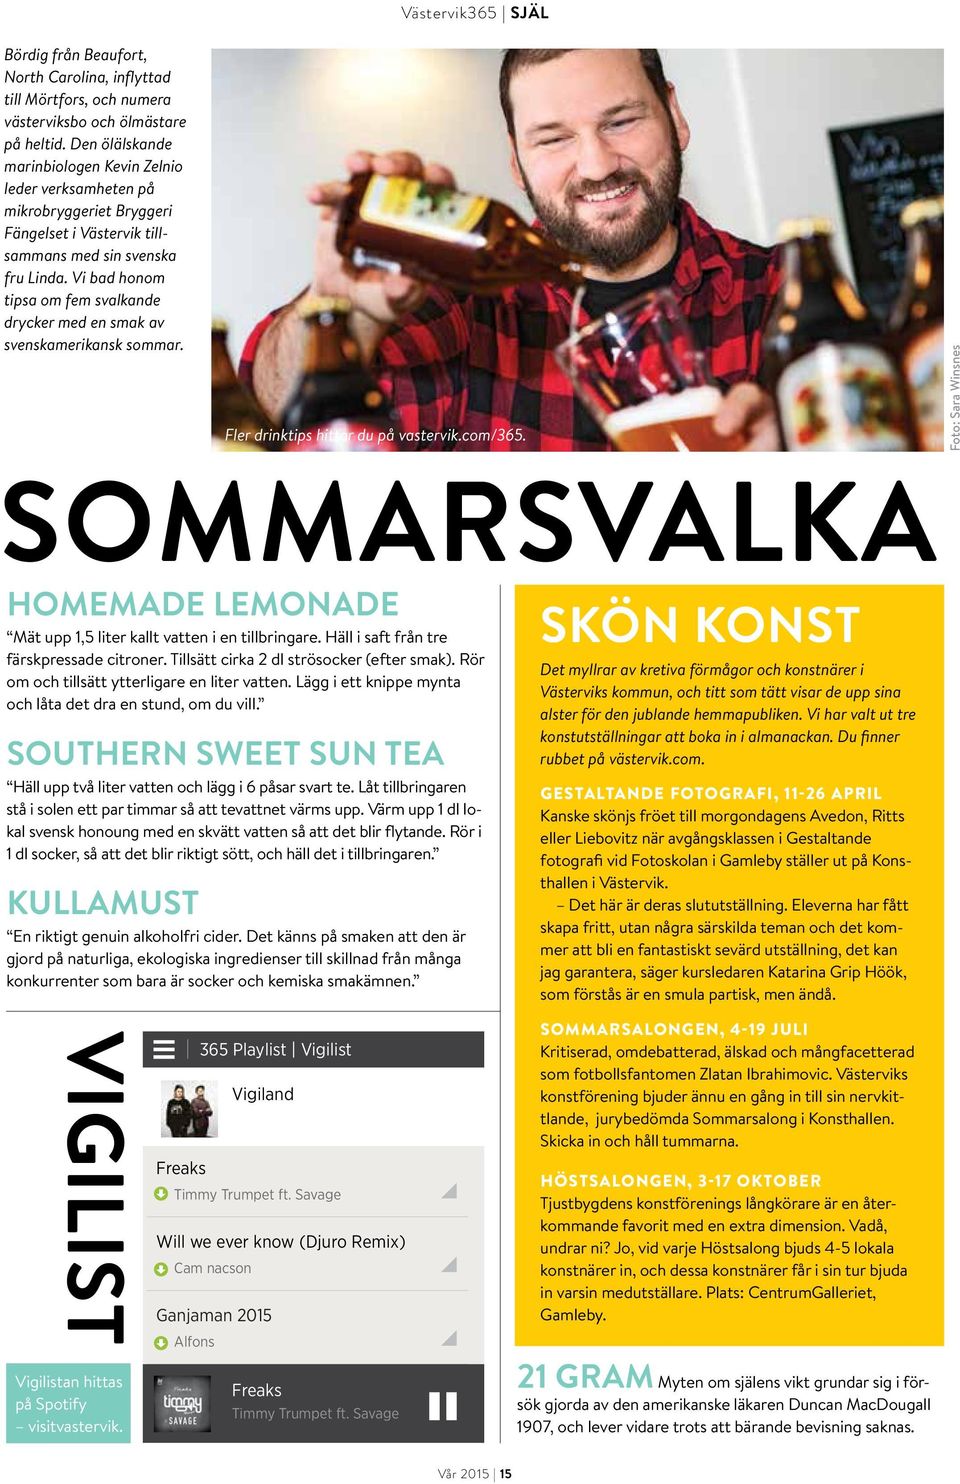 Vi bad honom tipsa om fem svalkande drycker med en smak av svenskamerikansk sommar. Västervik365 SJÄL Fler drinktips hittar du på vastervik.com/365.